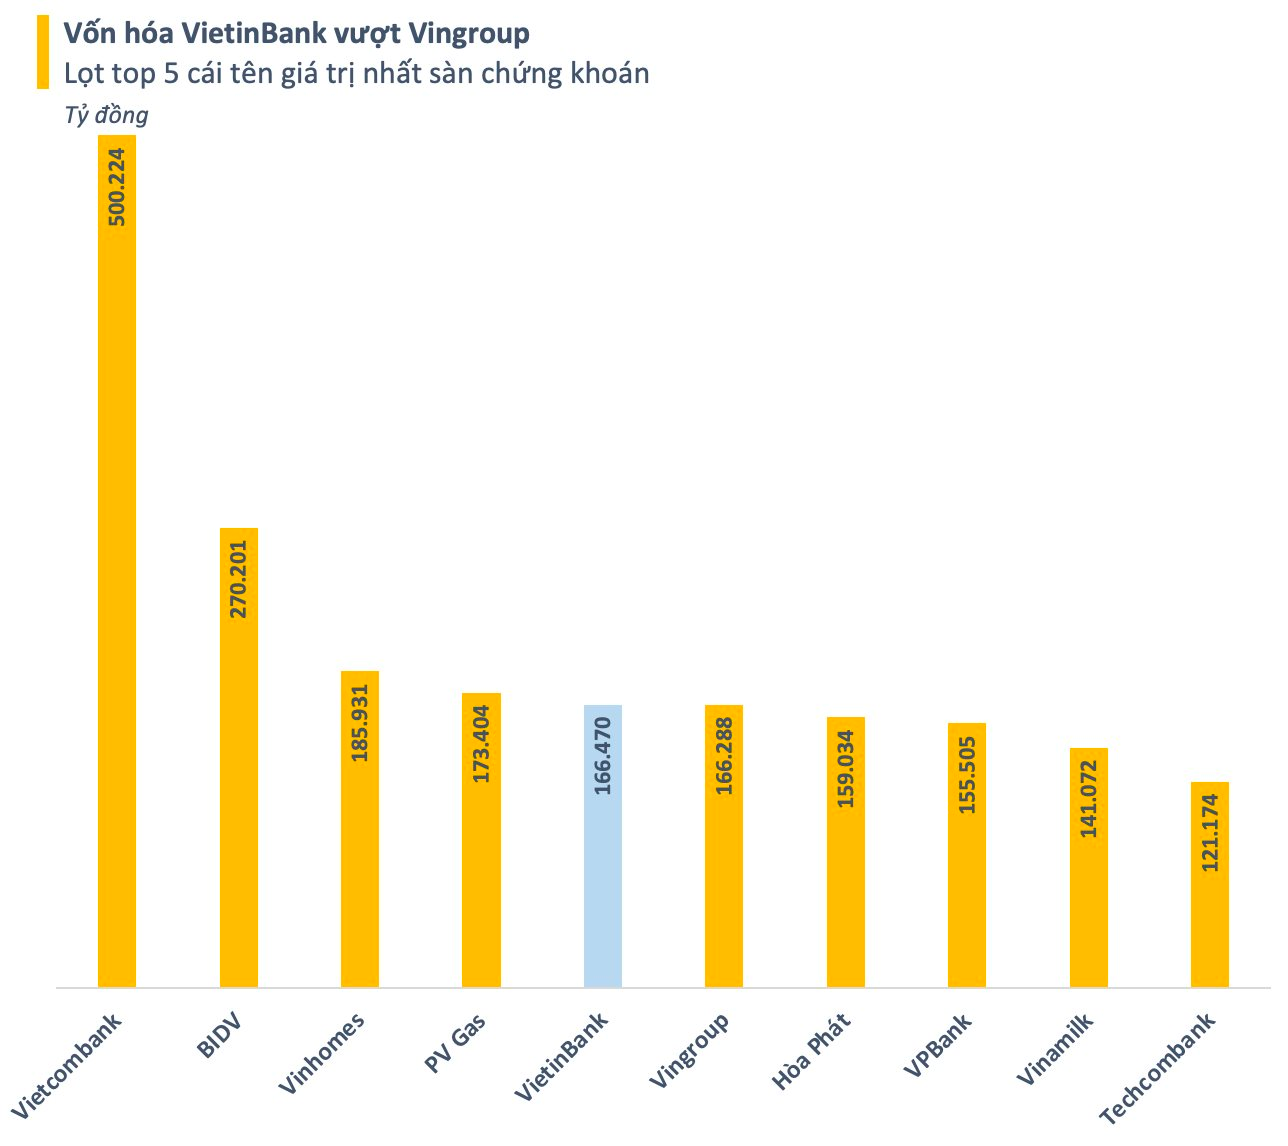 Cổ phiếu CTG tăng “bốc đầu”, vốn hóa VietinBank vượt VinGroup - Ảnh 1.